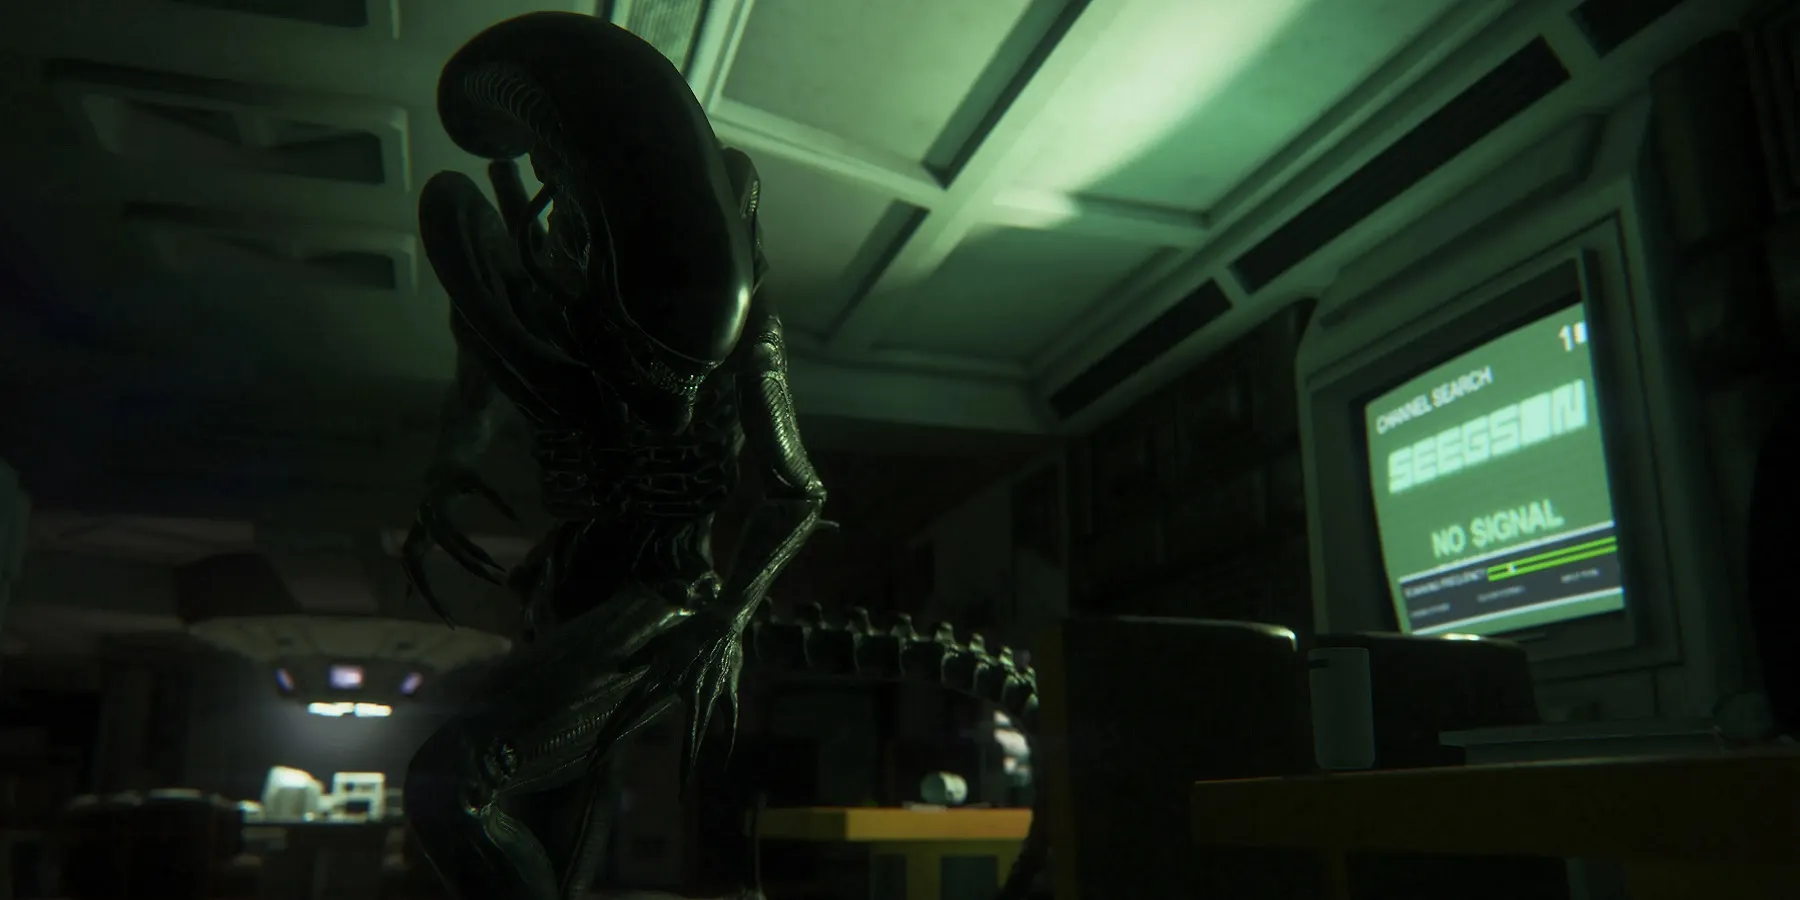 Immagine da Alien: Isolation che mostra il Xenomorph immerso in una luce verde.